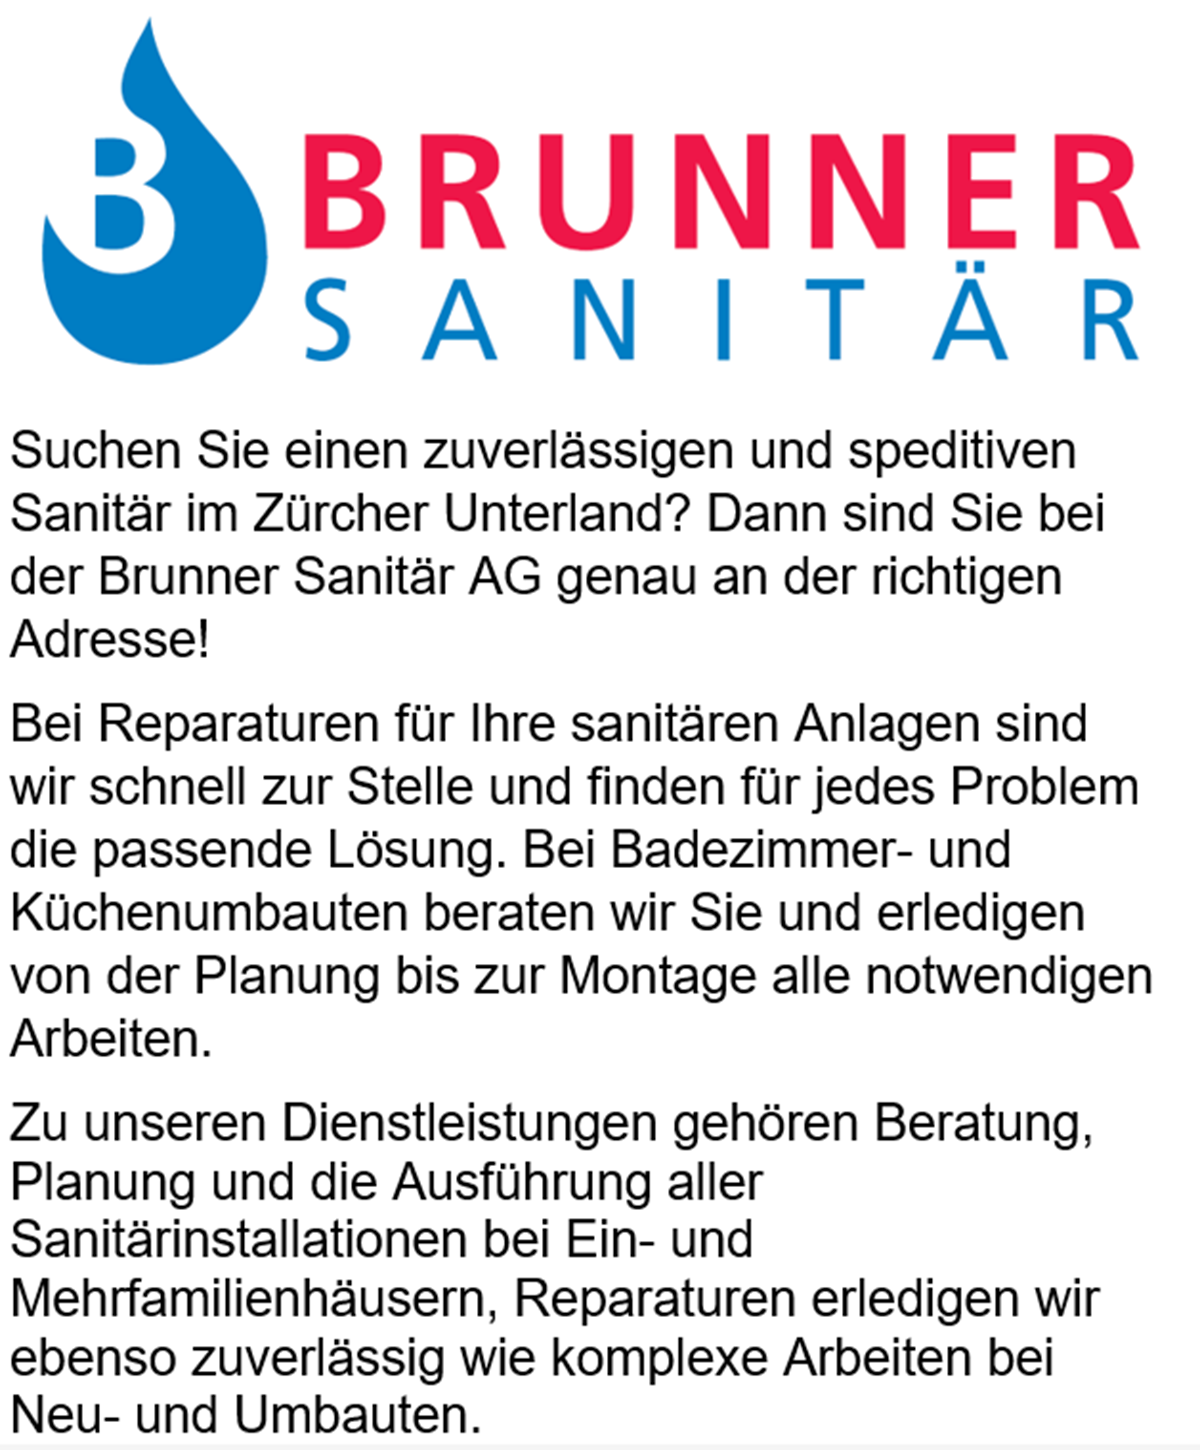 Brunner Sanitär AG